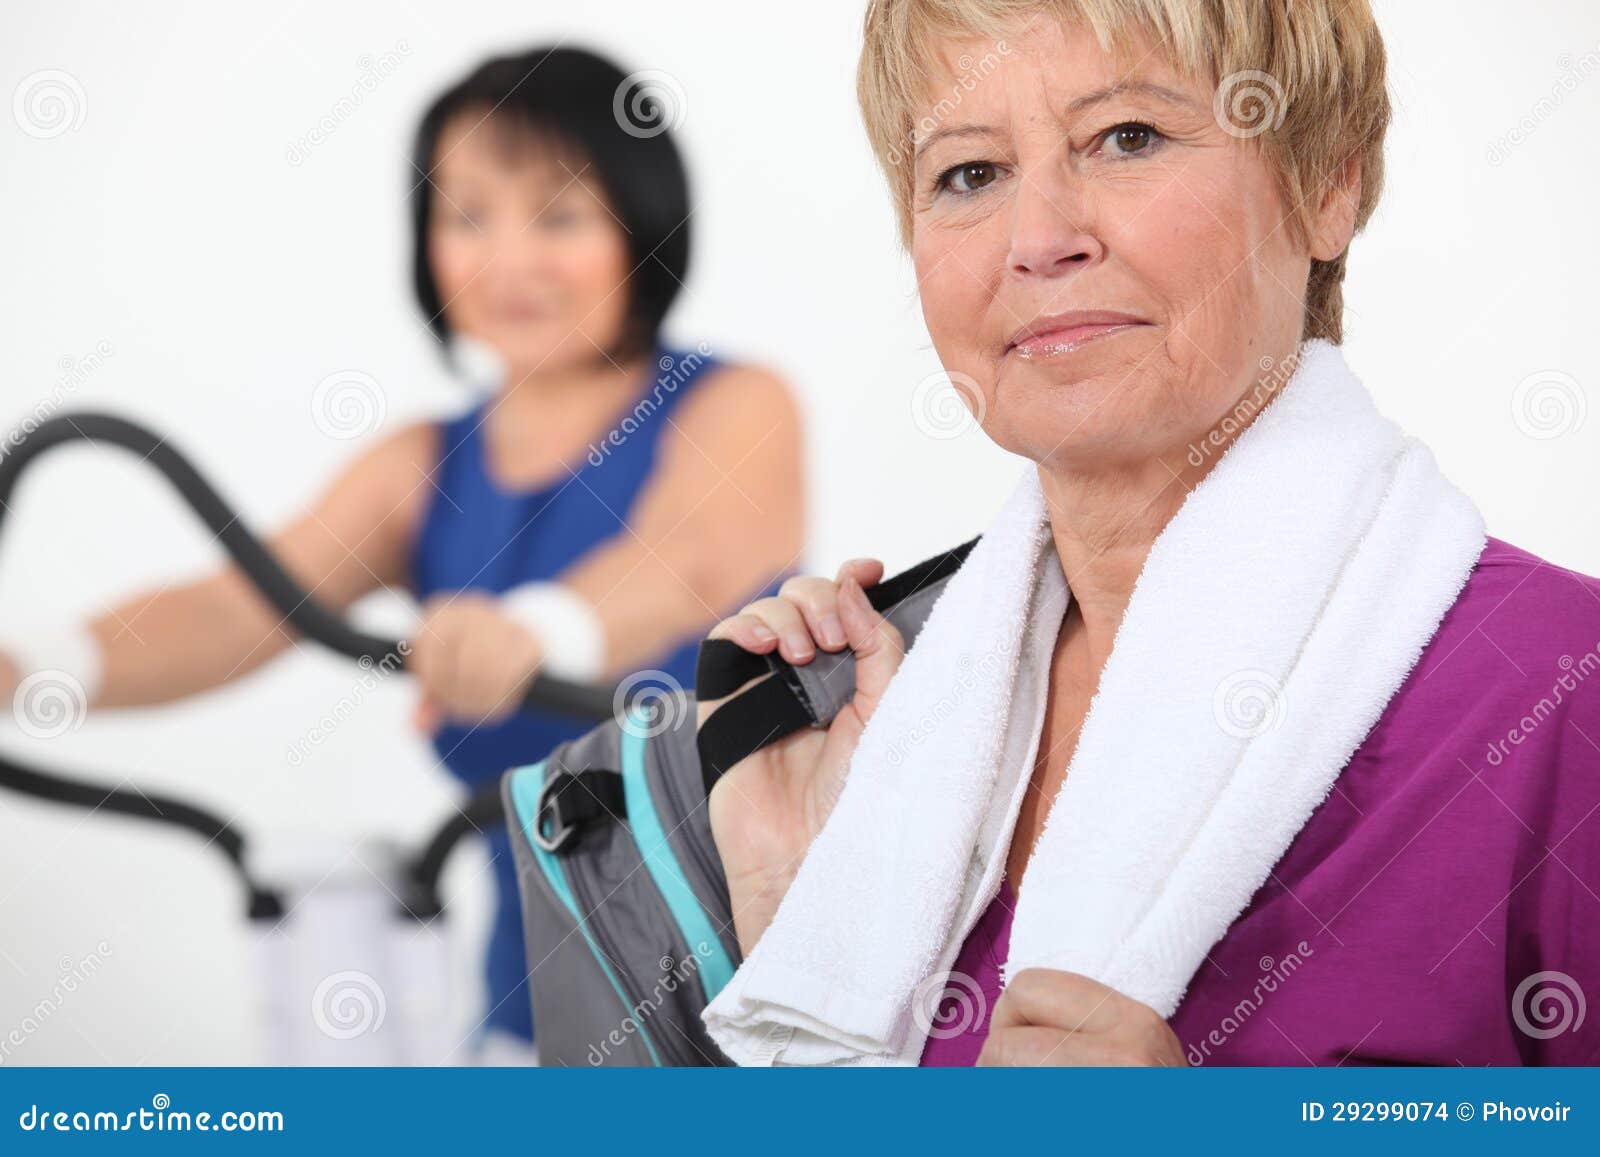 women-using-gym-equipment-29299074